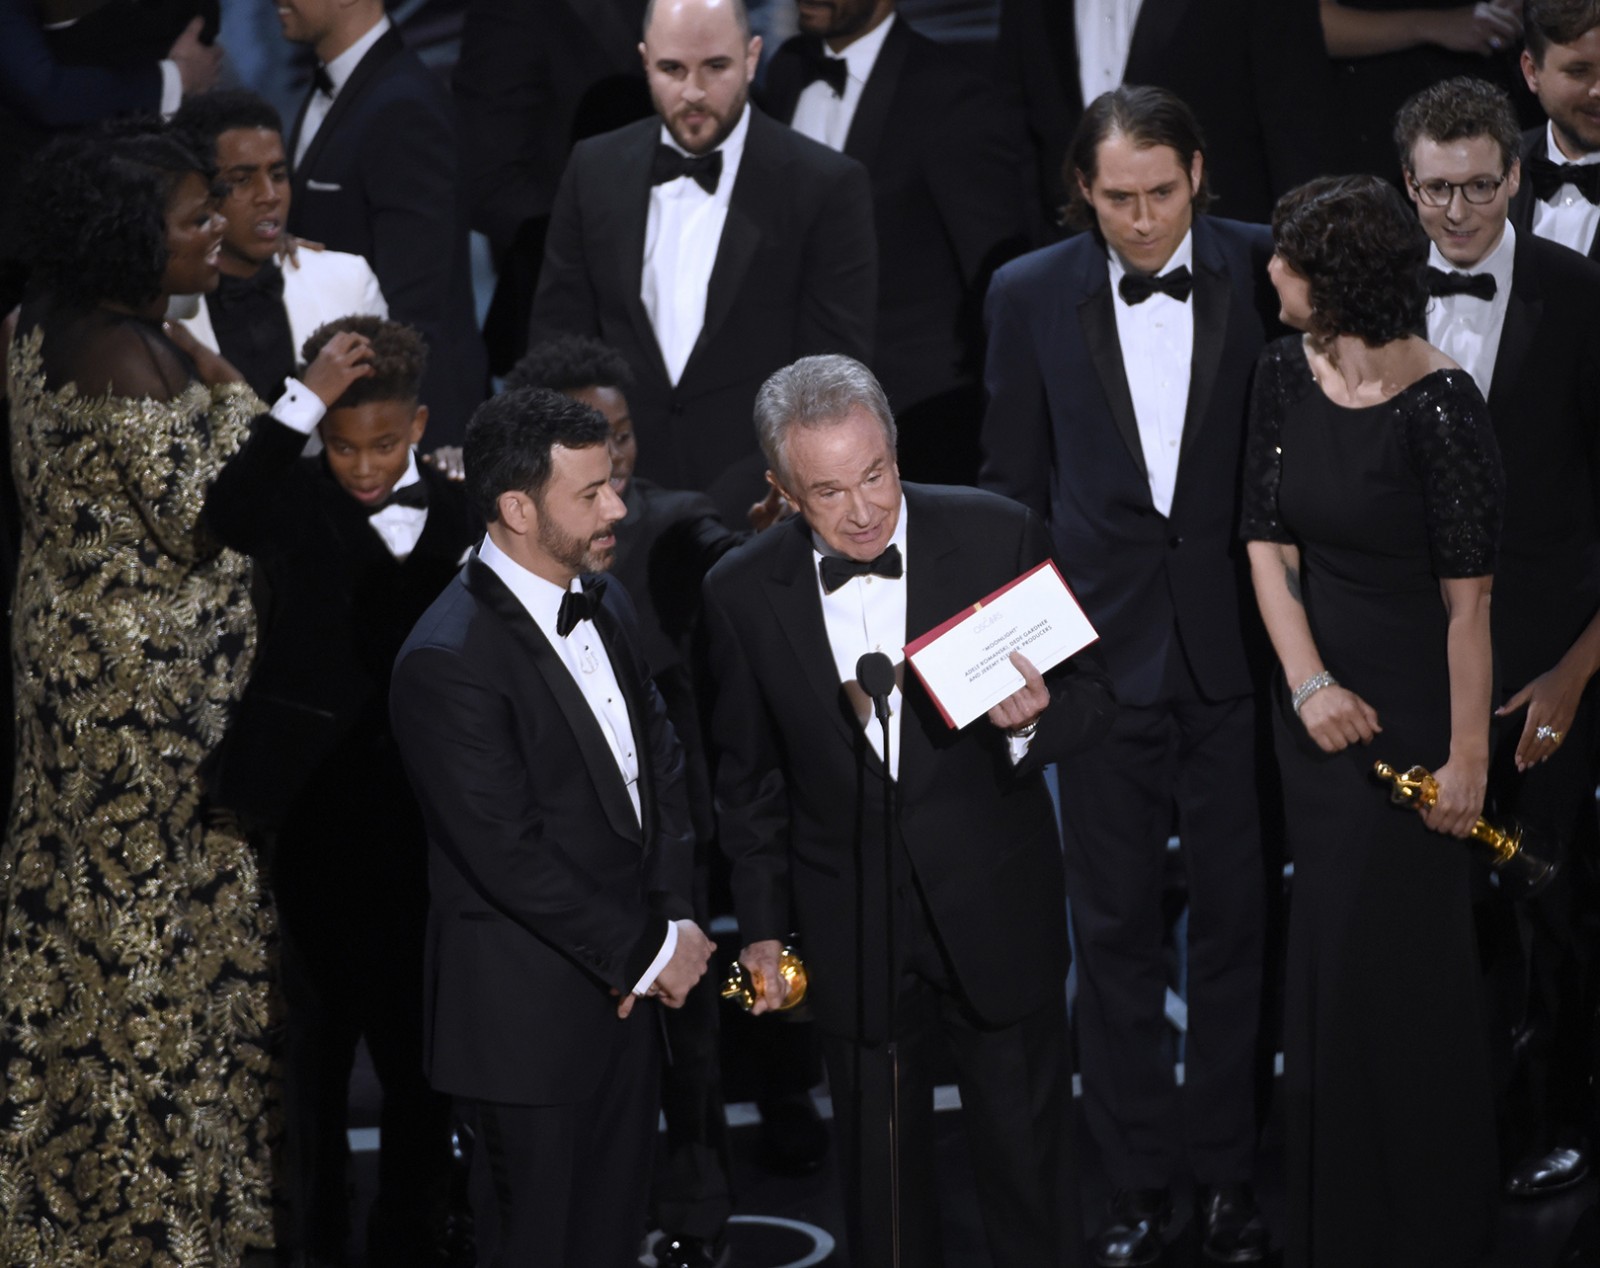 אופס: וורן ביטי מראה לקהל את המעטפה עם שם הזוכה הנכון בסרט הטוב ביותר (צילום: Chris Pizzello/Invision/AP)